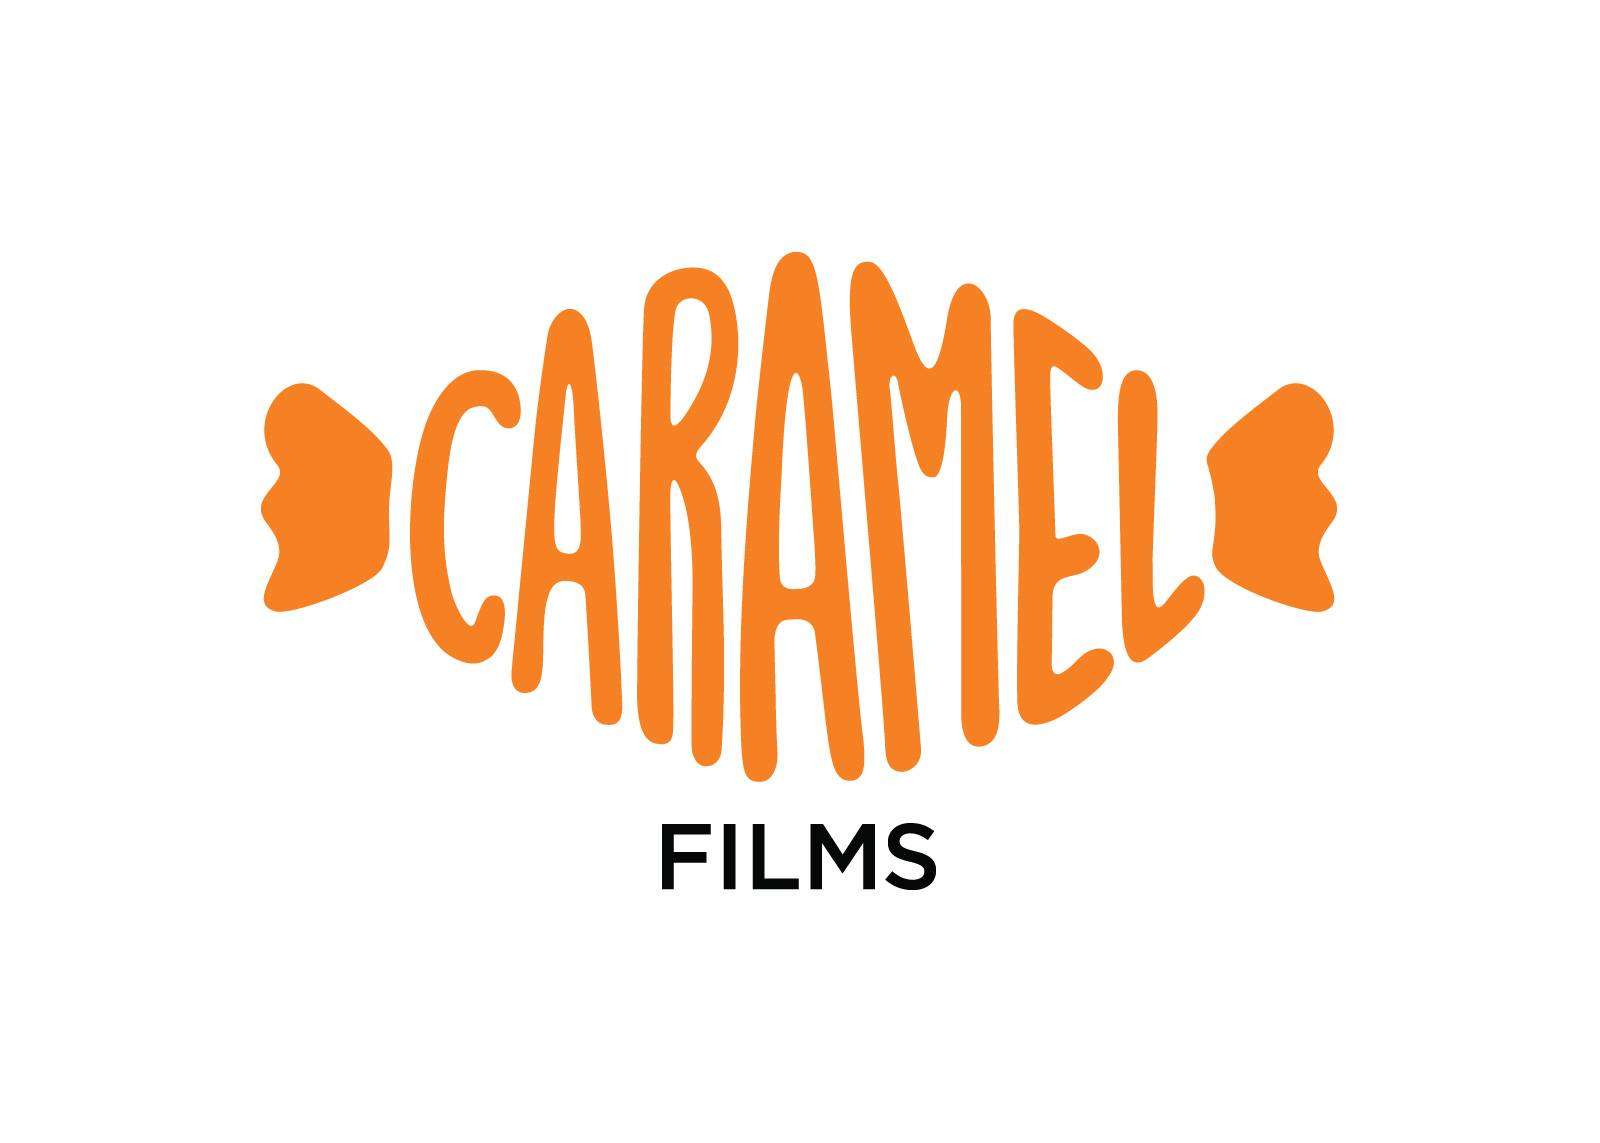 Caramel текст. Карамель надпись. Карамель логотип. Карамель вывеска. Caramel надпись.